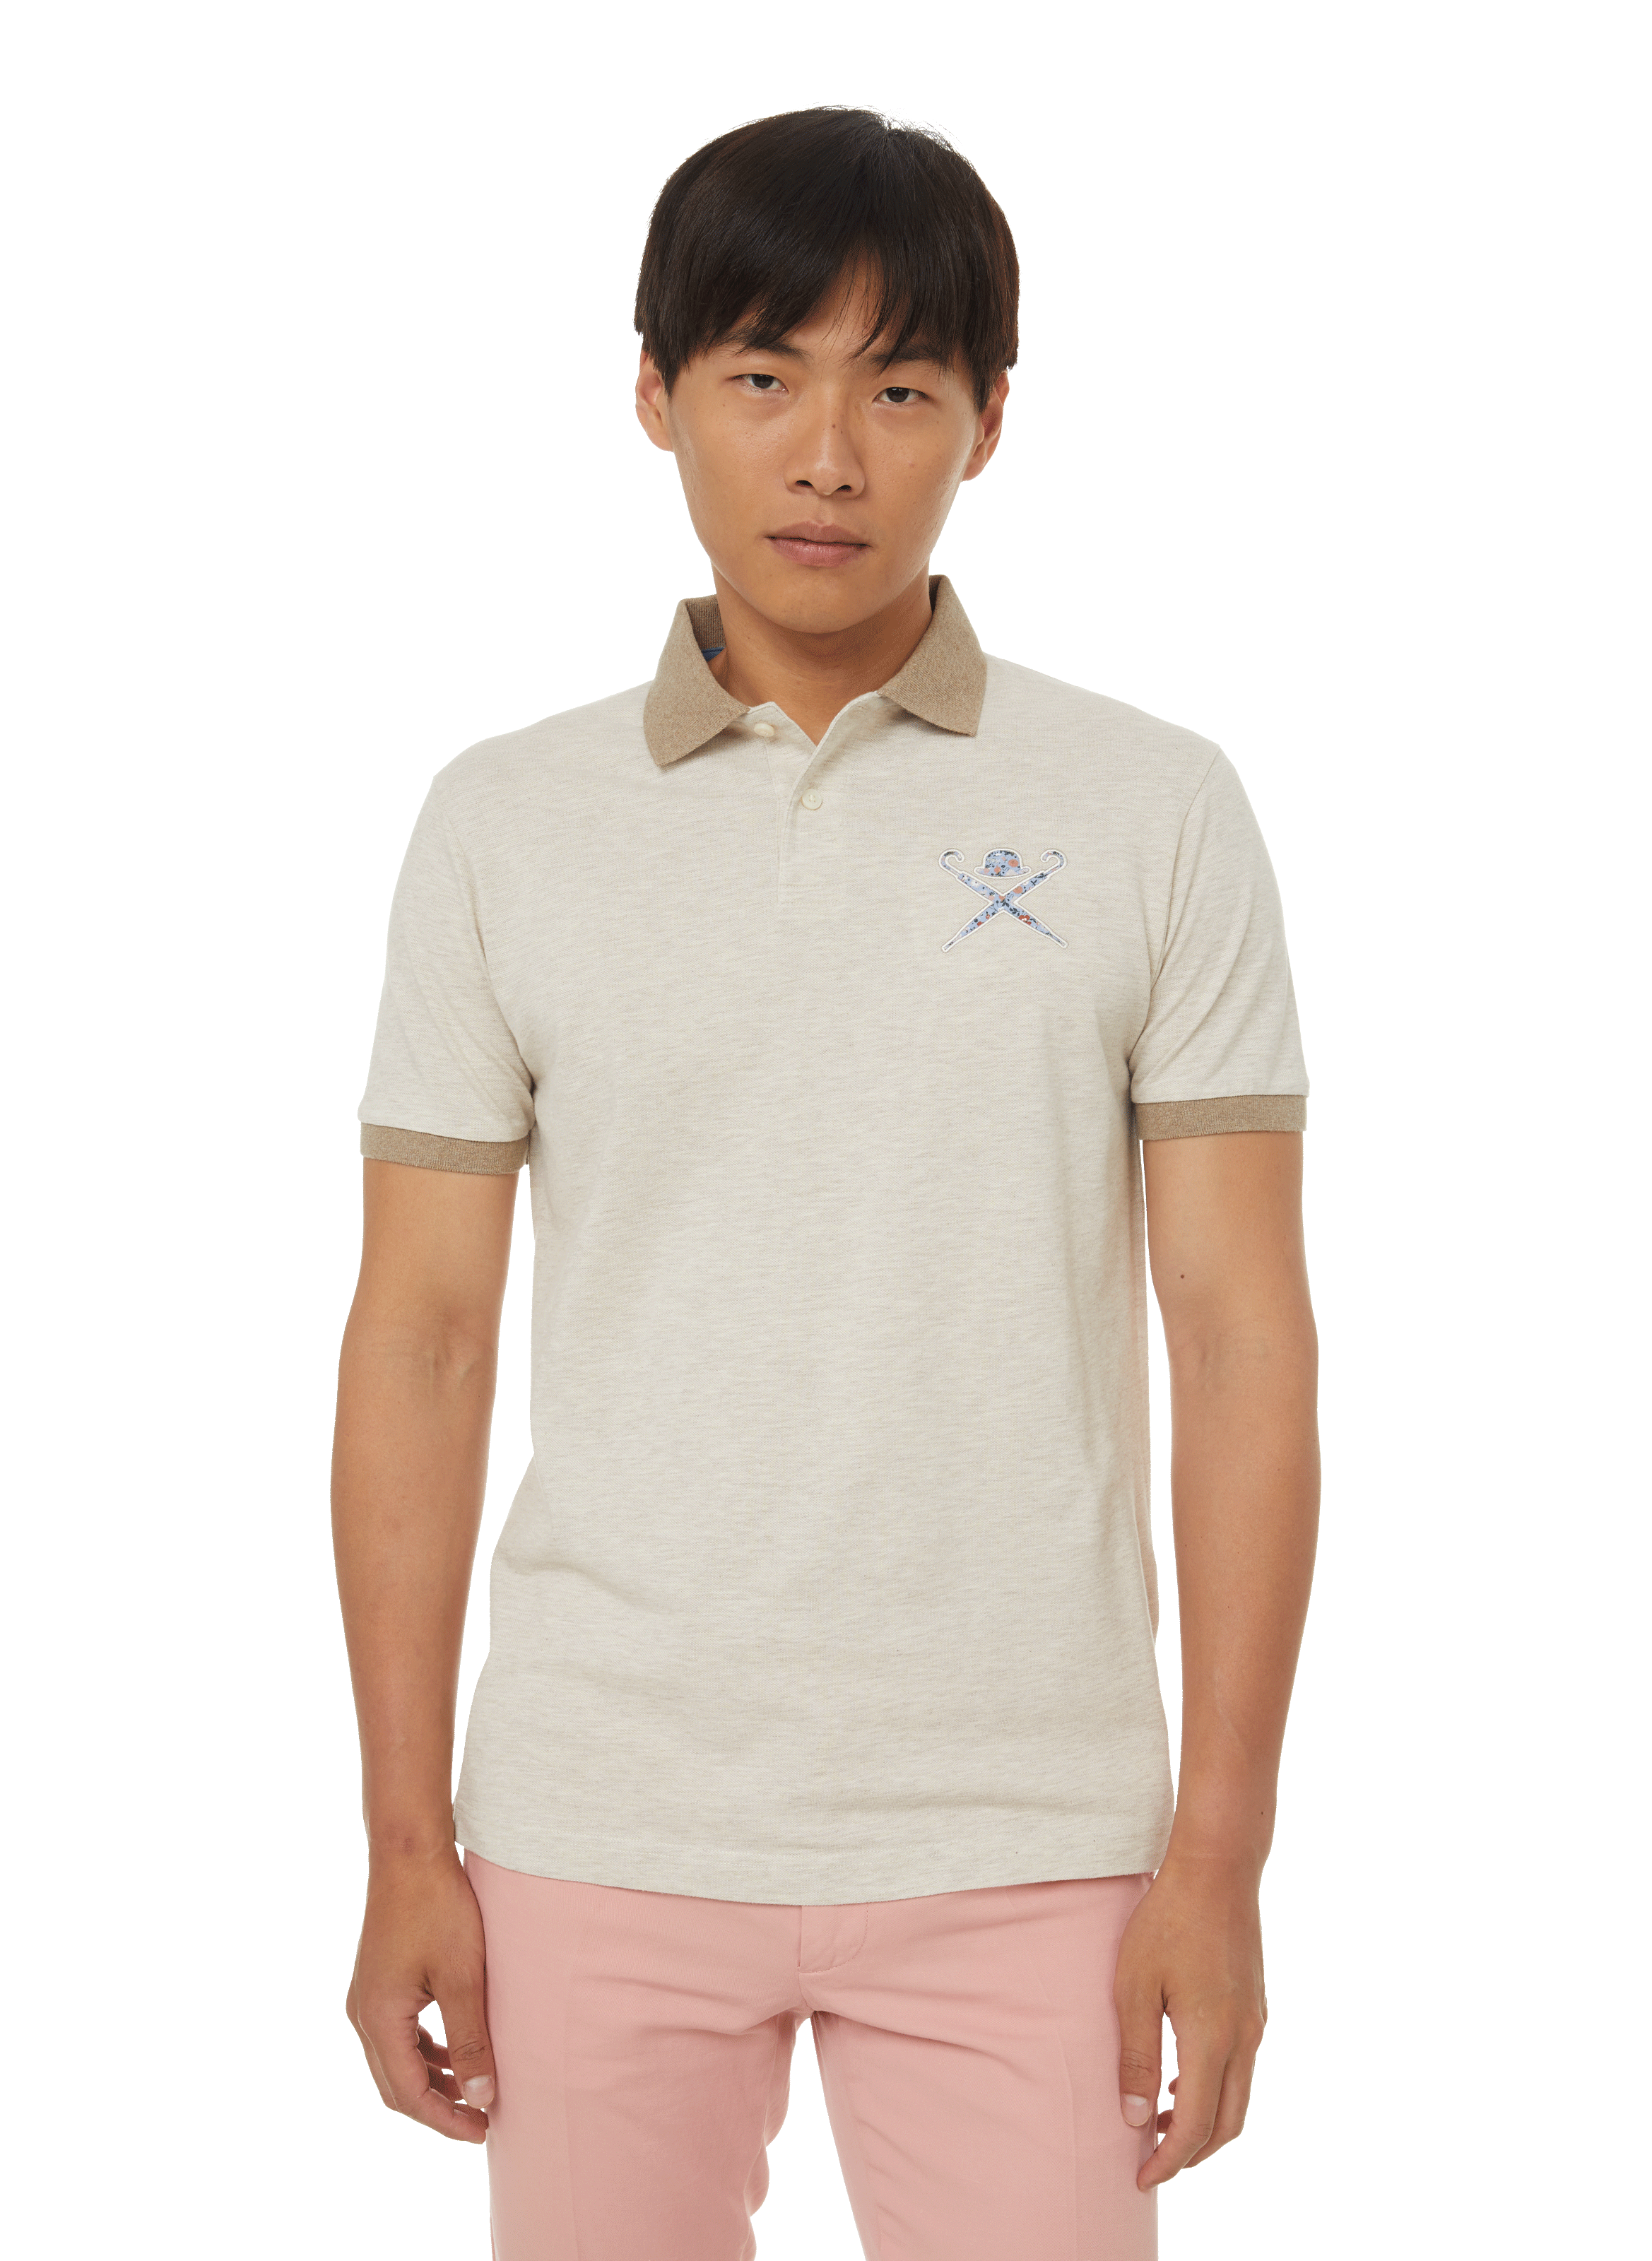 Printemps.com Homme Vêtements Tops & T-shirts T-shirts Polos Polo en coton piqué 